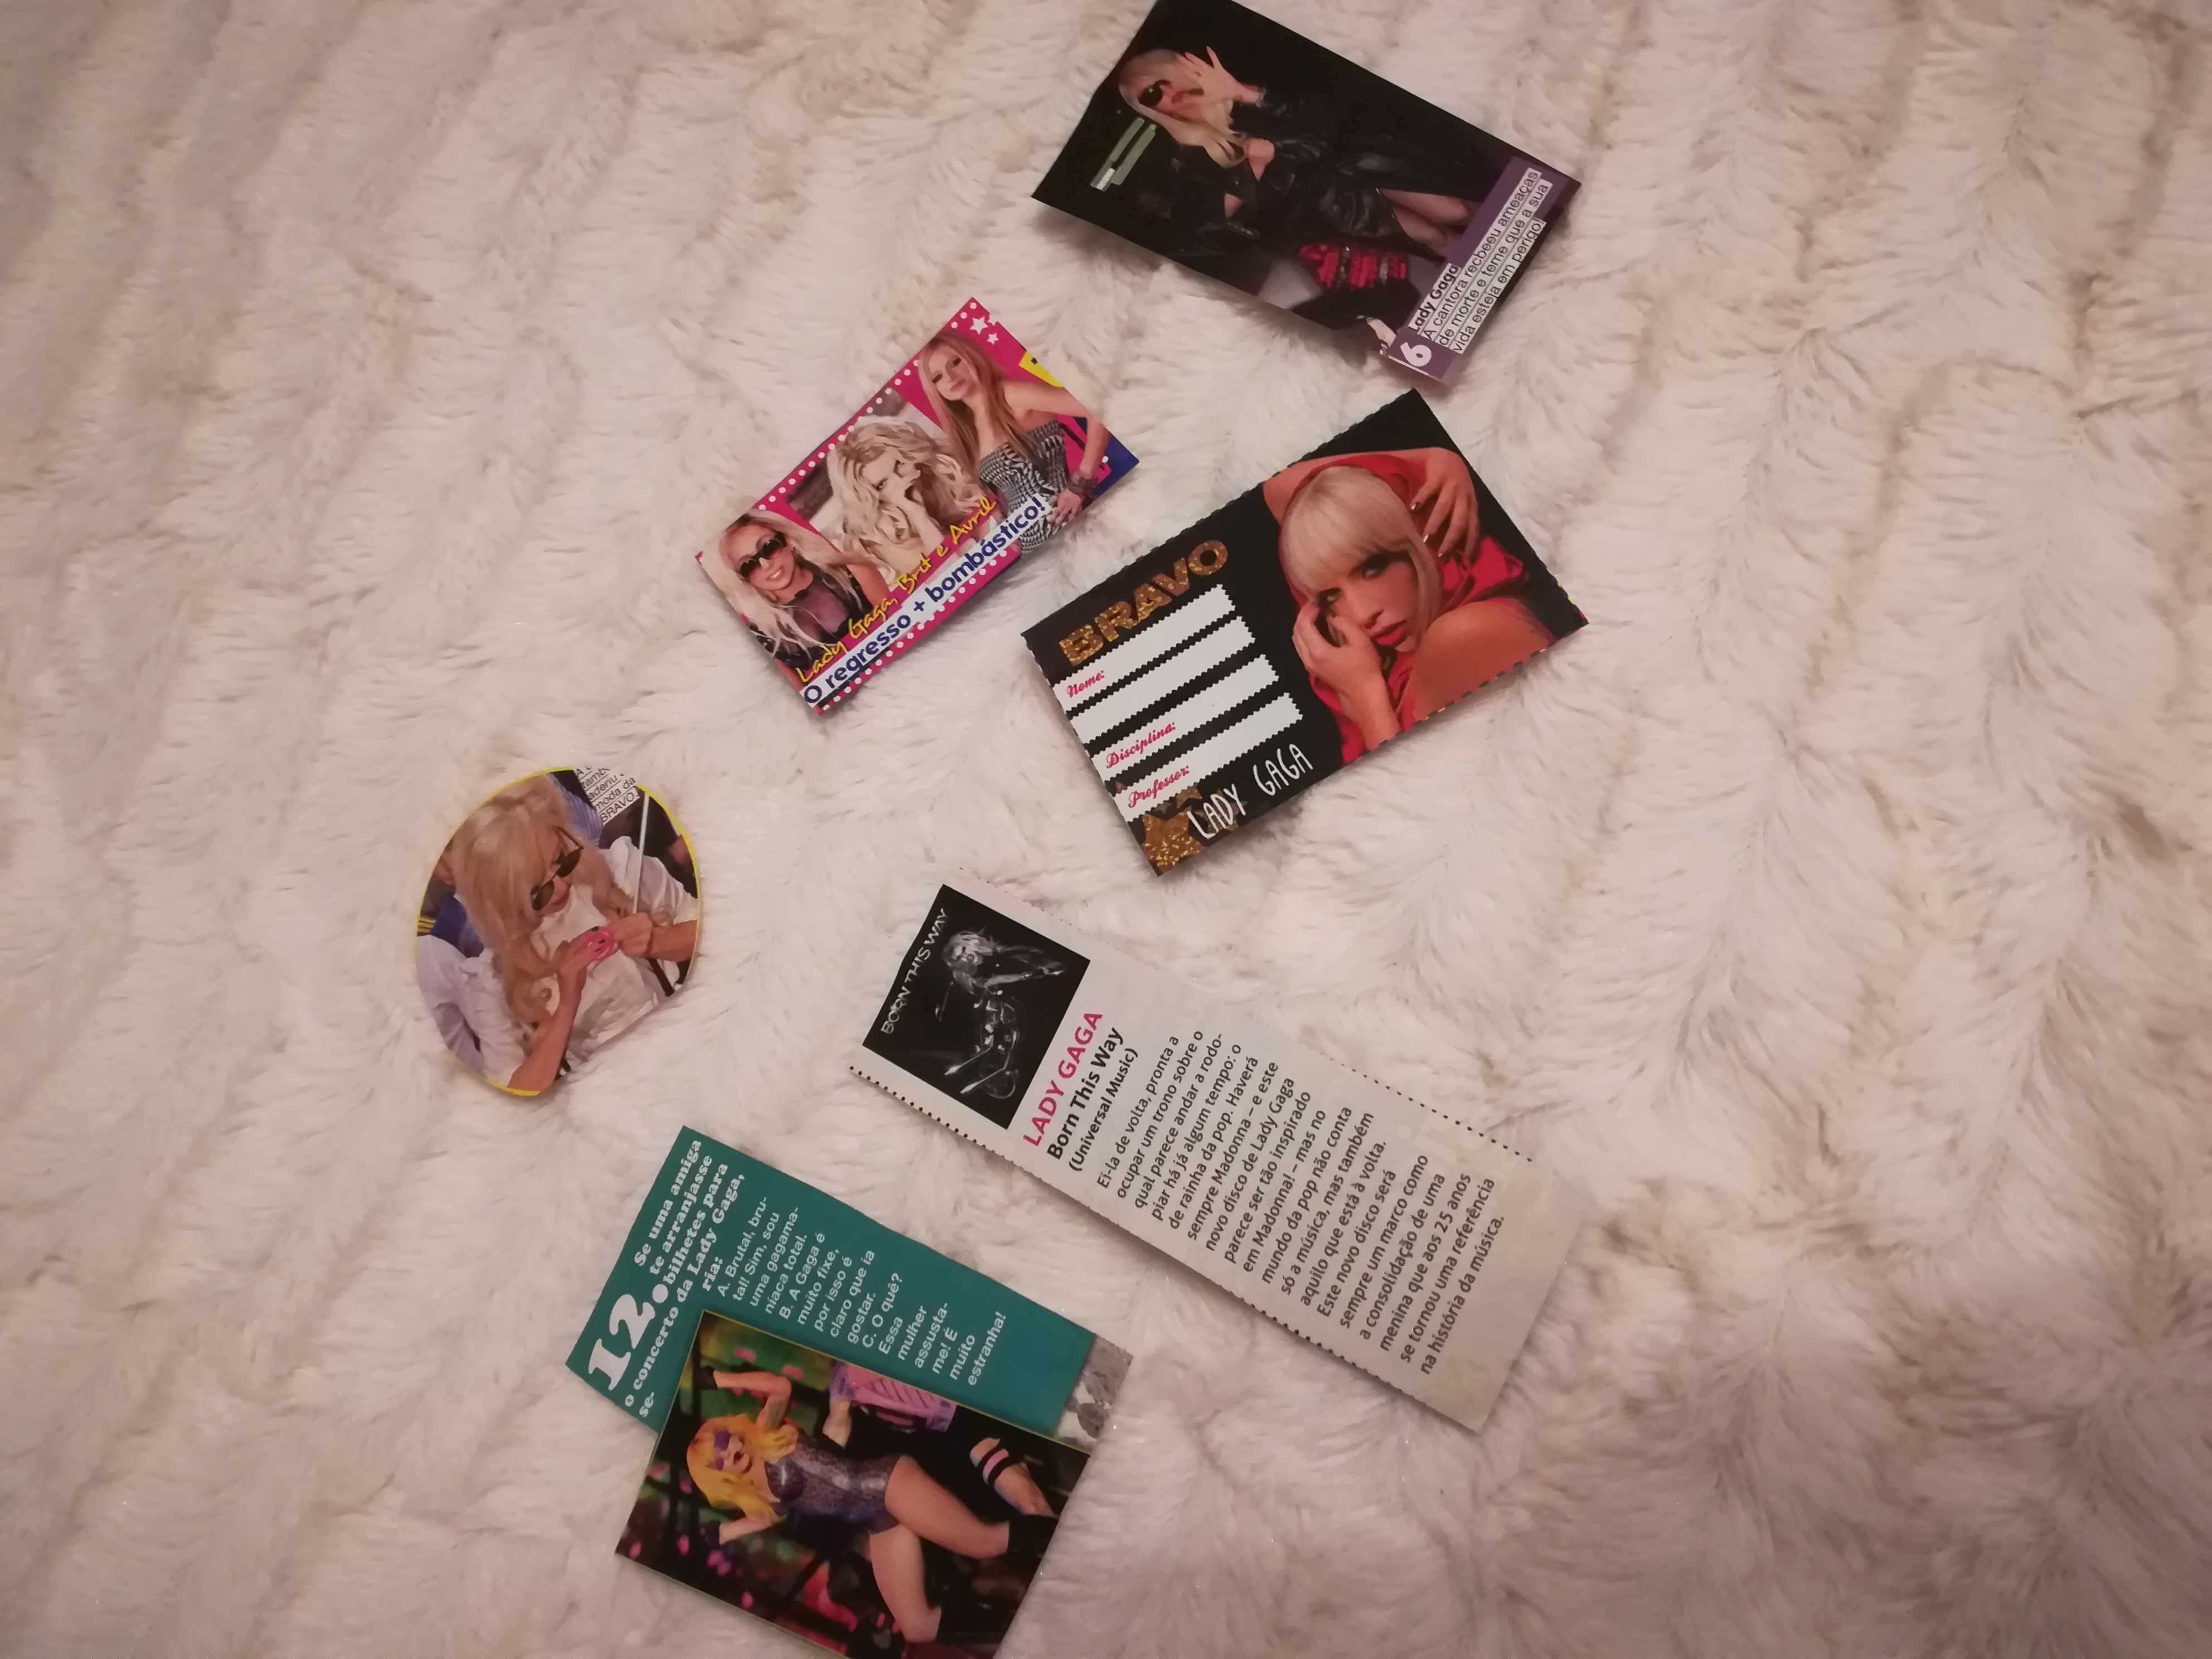 Páginas de Revistas e Recortes da Lady Gaga - Colecção